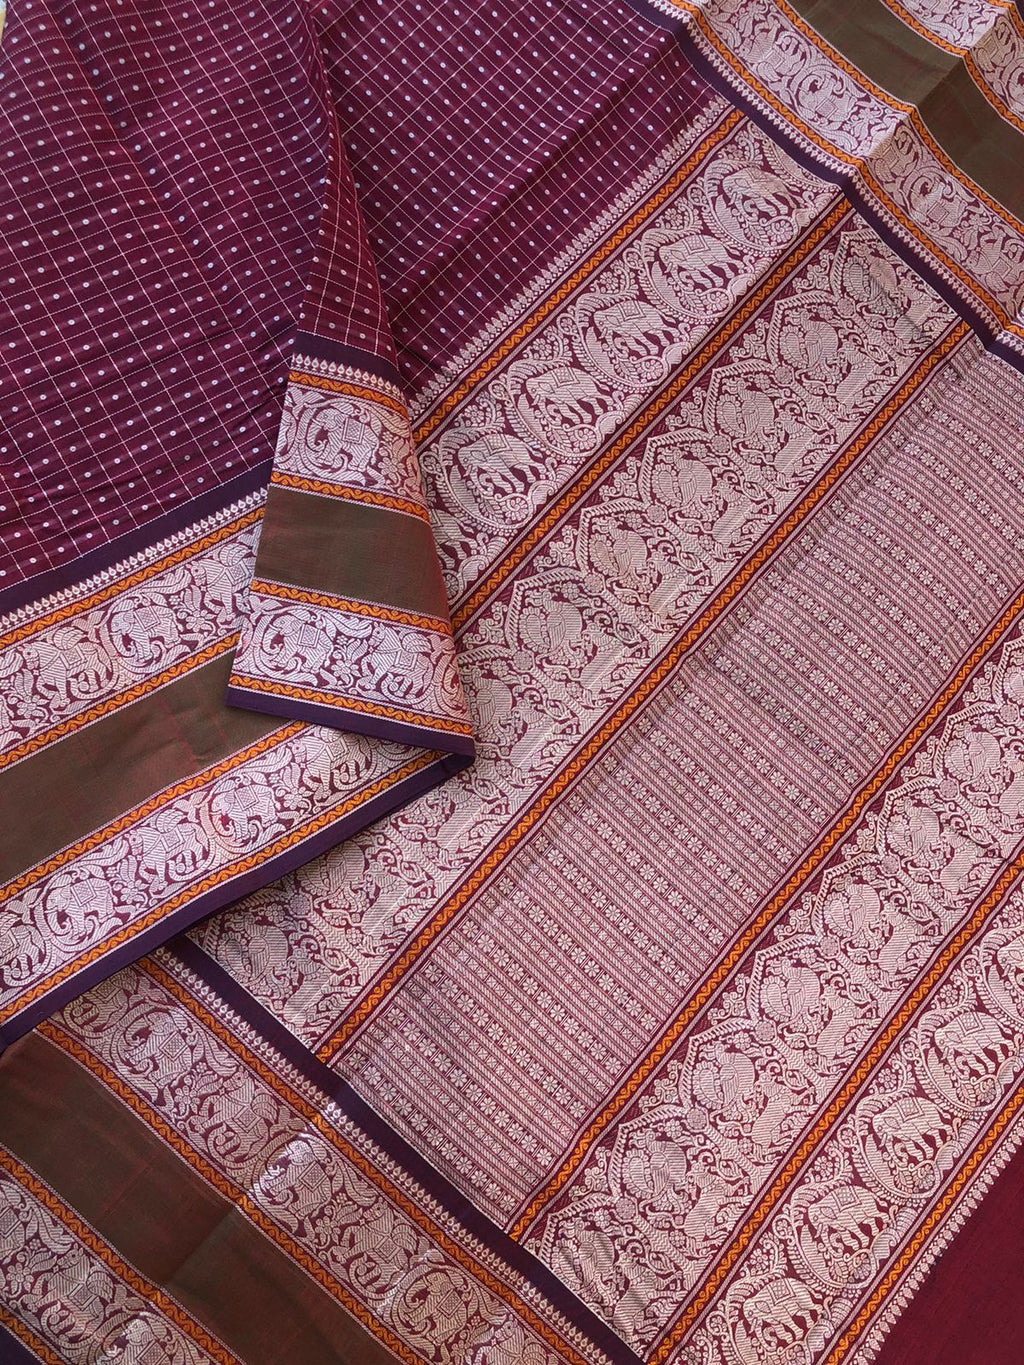 Mangalavastaram - stunning burgundy maroon grandest Lakshadeepam